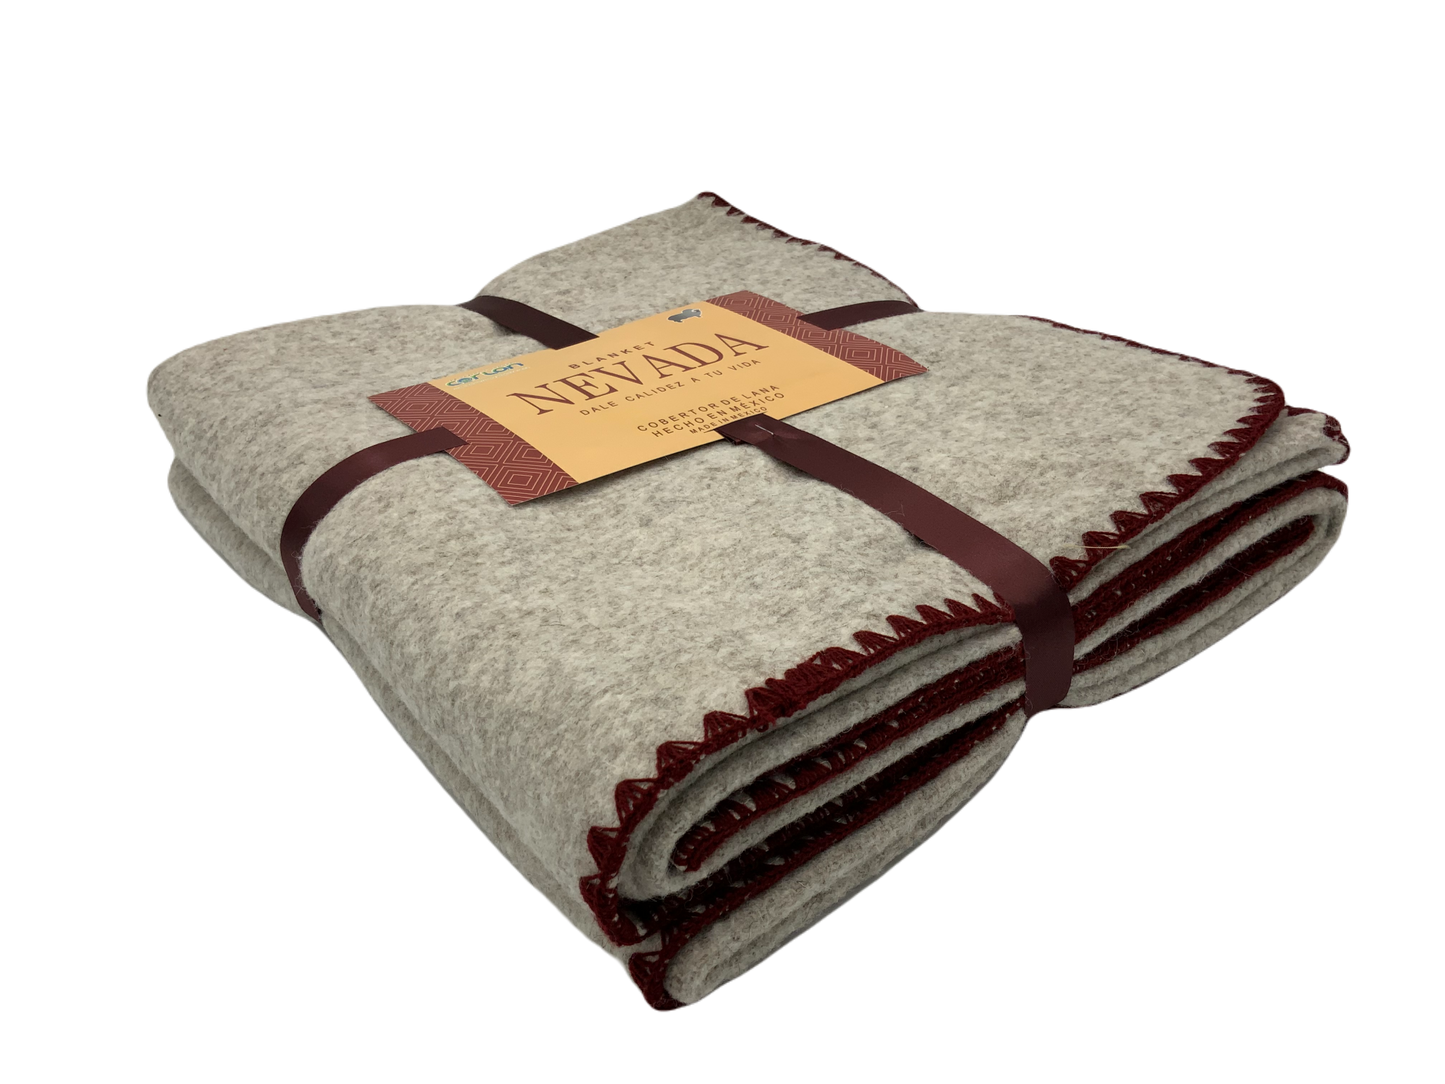 Cobertor Nevada Con Terminado tipo Crochet 1.60 x 2.00 mts